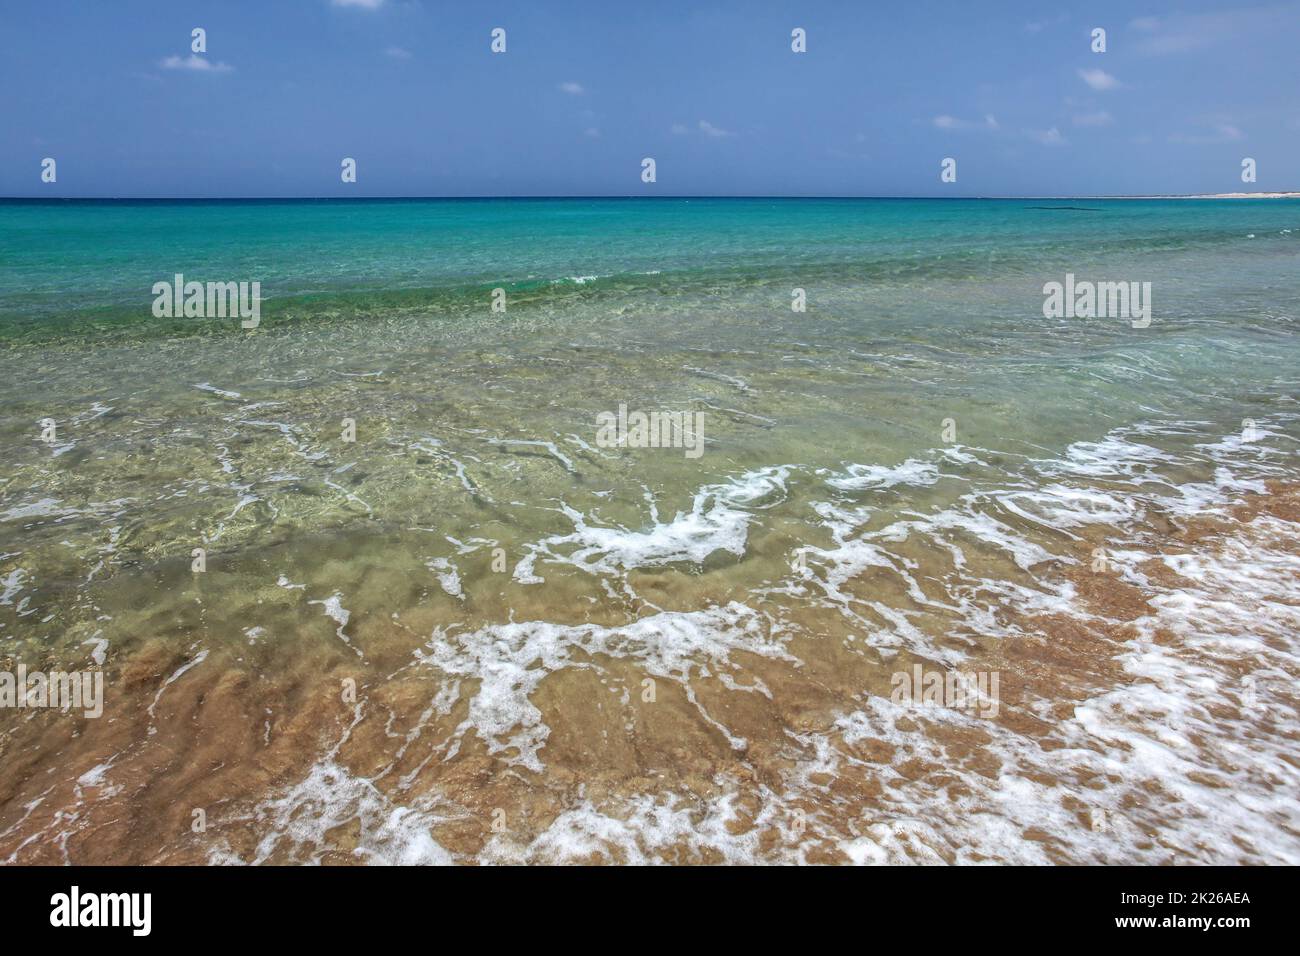 L'eau claire avec de petites vagues, la mer d'azur en arrière-plan. Vide intacte plage sauvage dans la péninsule de Karpas, dans le nord de Chypre Banque D'Images